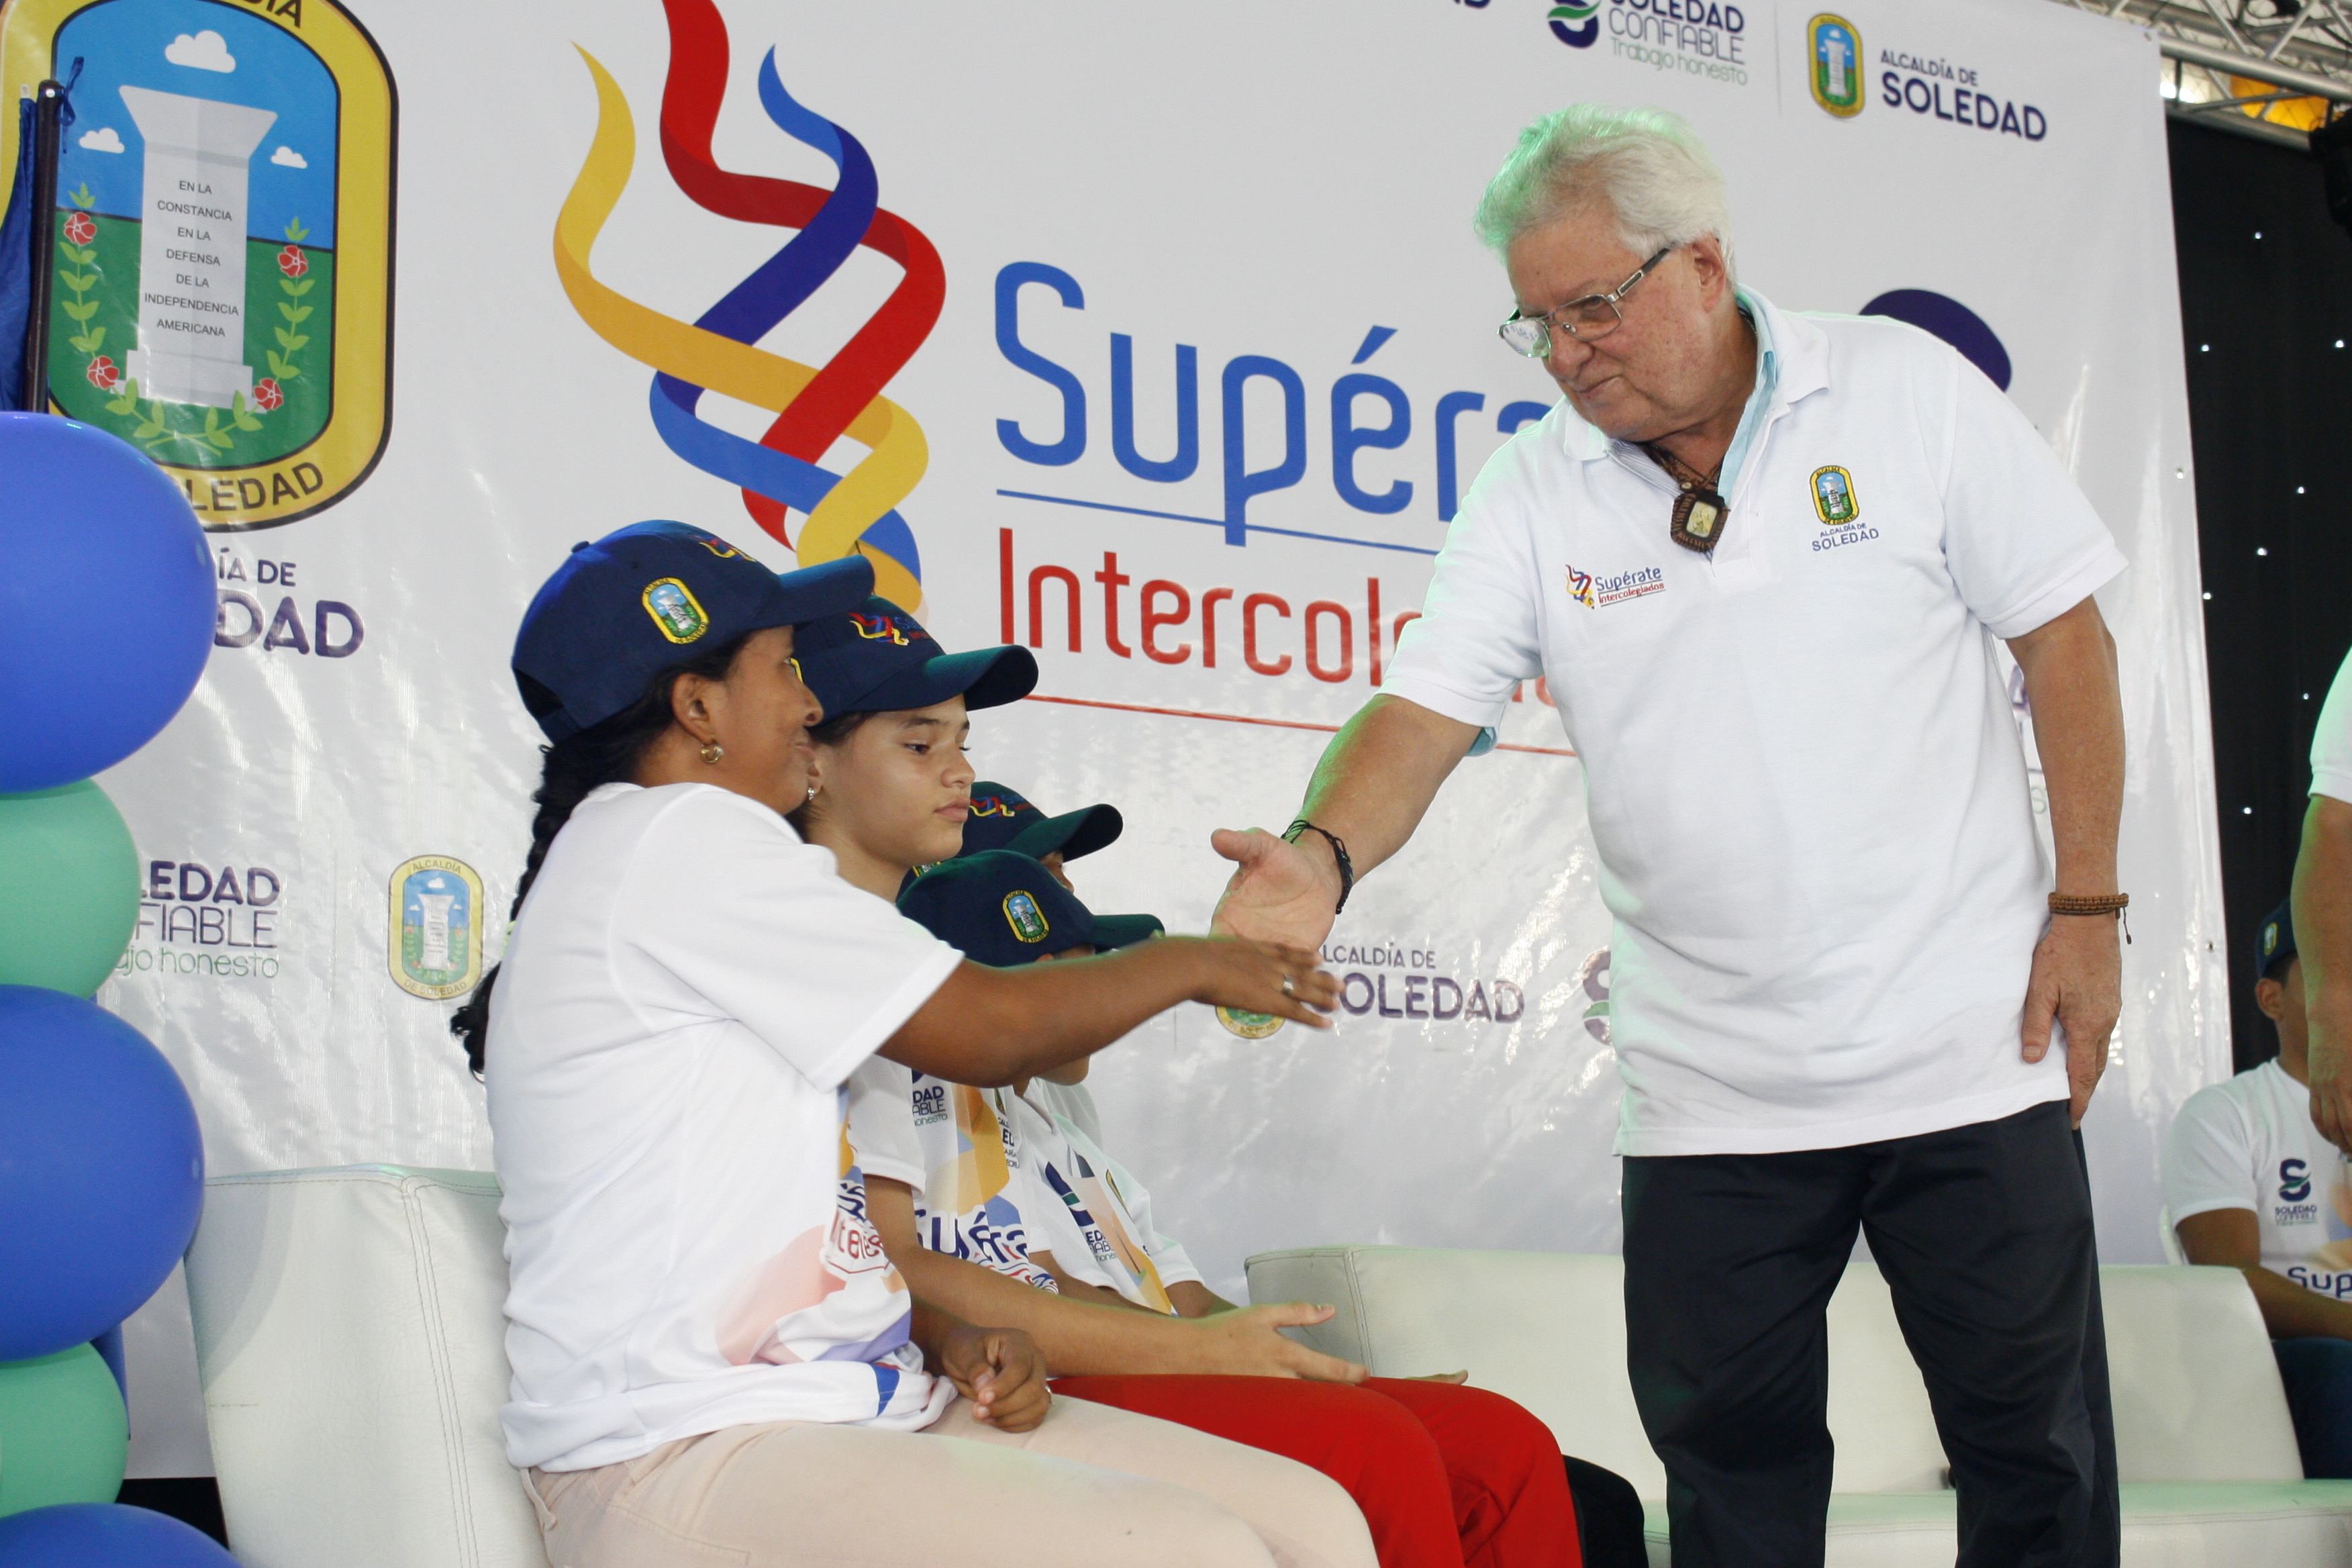 Alcalde Joao Herrera inauguró los Juegos Supérate Intercolegiados de Soledad 2018